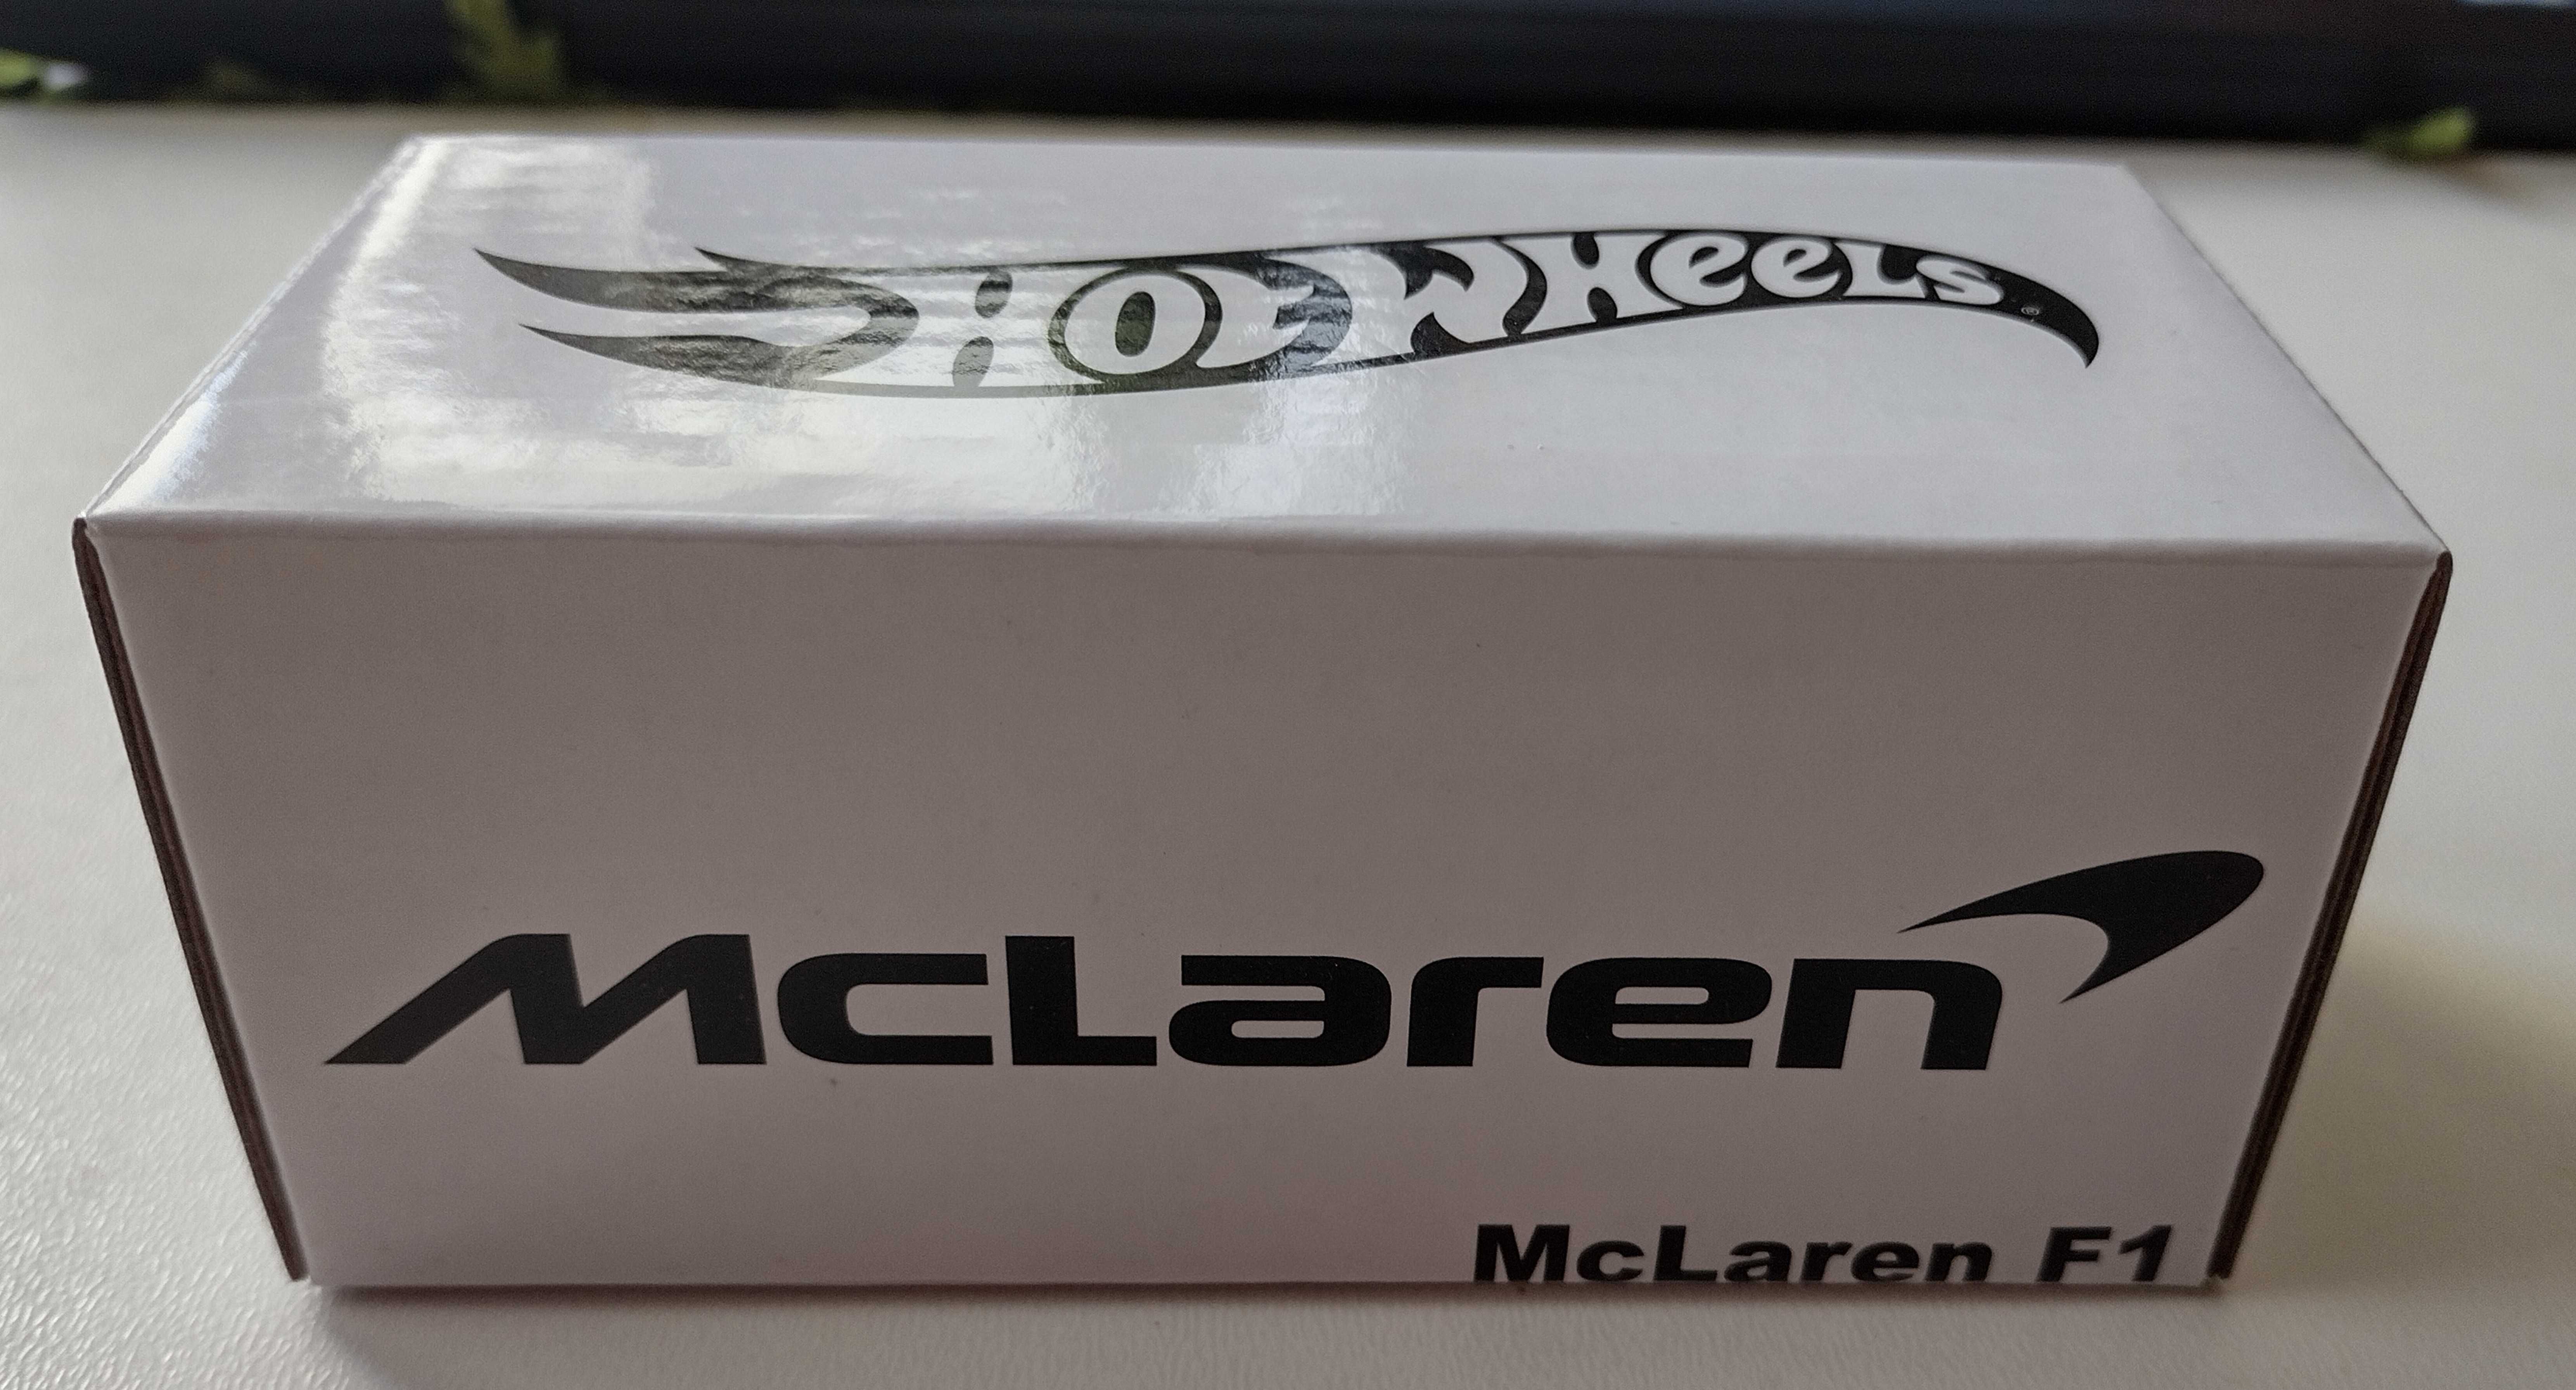 Hot Wheels RLC McLaren F1